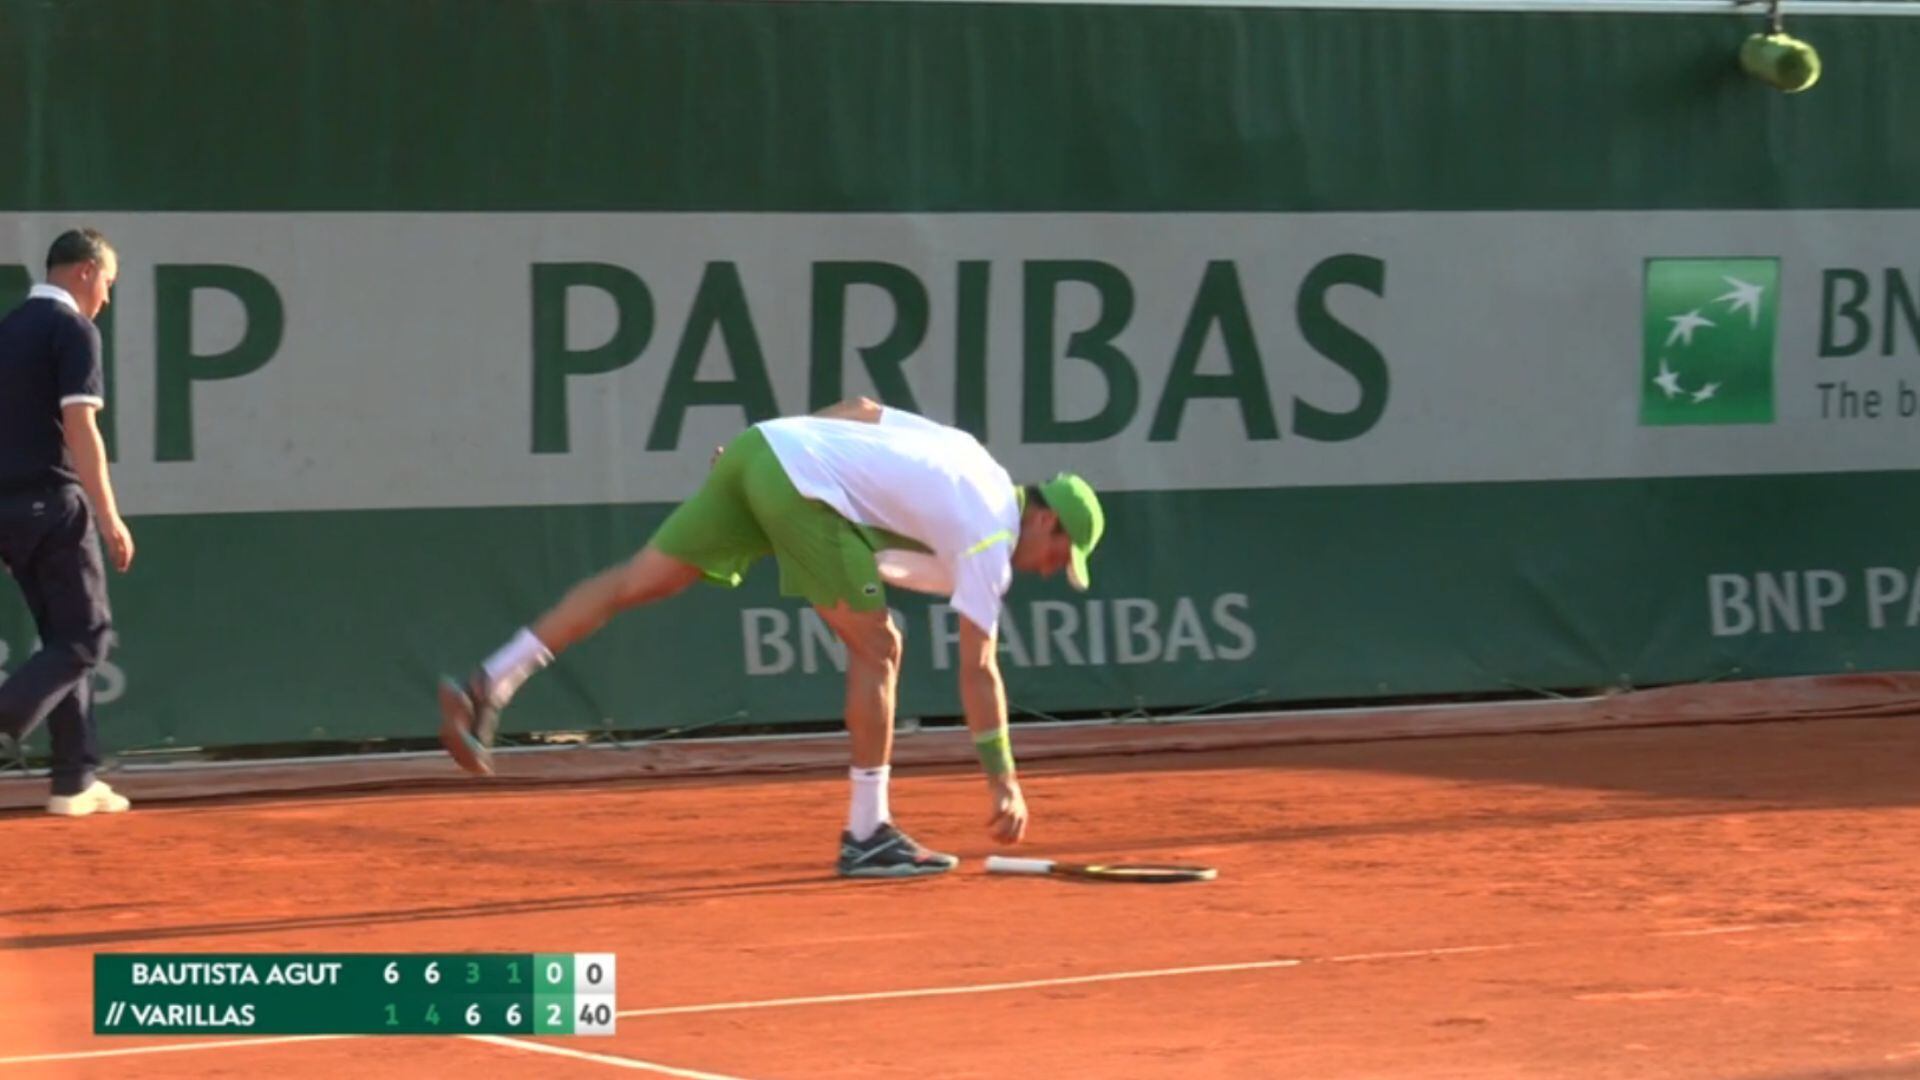 El tenista español se mostró bastante molesto luego de perder un punto ante Varillas. (Foto: Captura Star Plus)